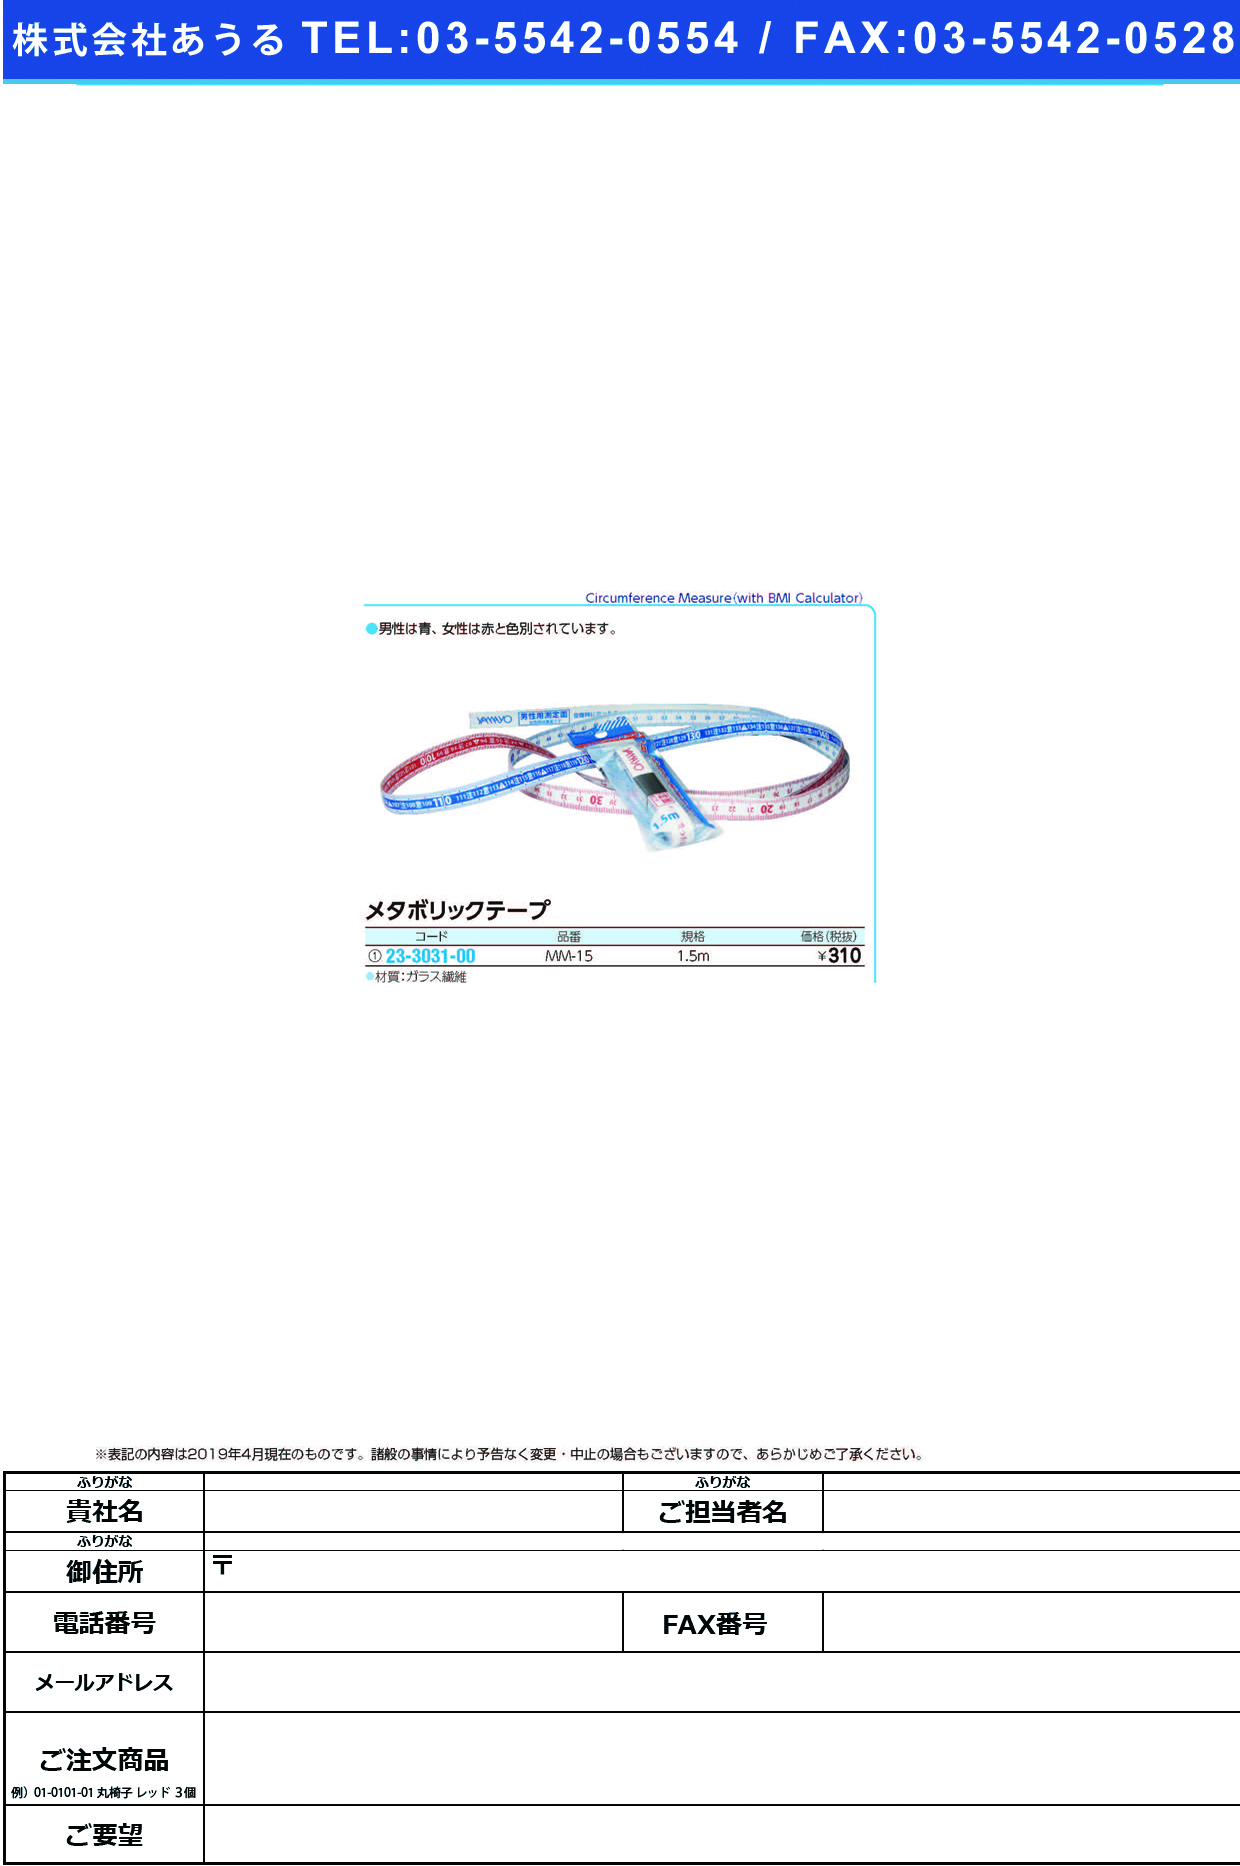 (23-3031-00)メタボリックテープ MM-15(1.5M) ﾒﾀﾎﾞﾘｯｸﾃｰﾌﾟ【1本単位】【2019年カタログ商品】